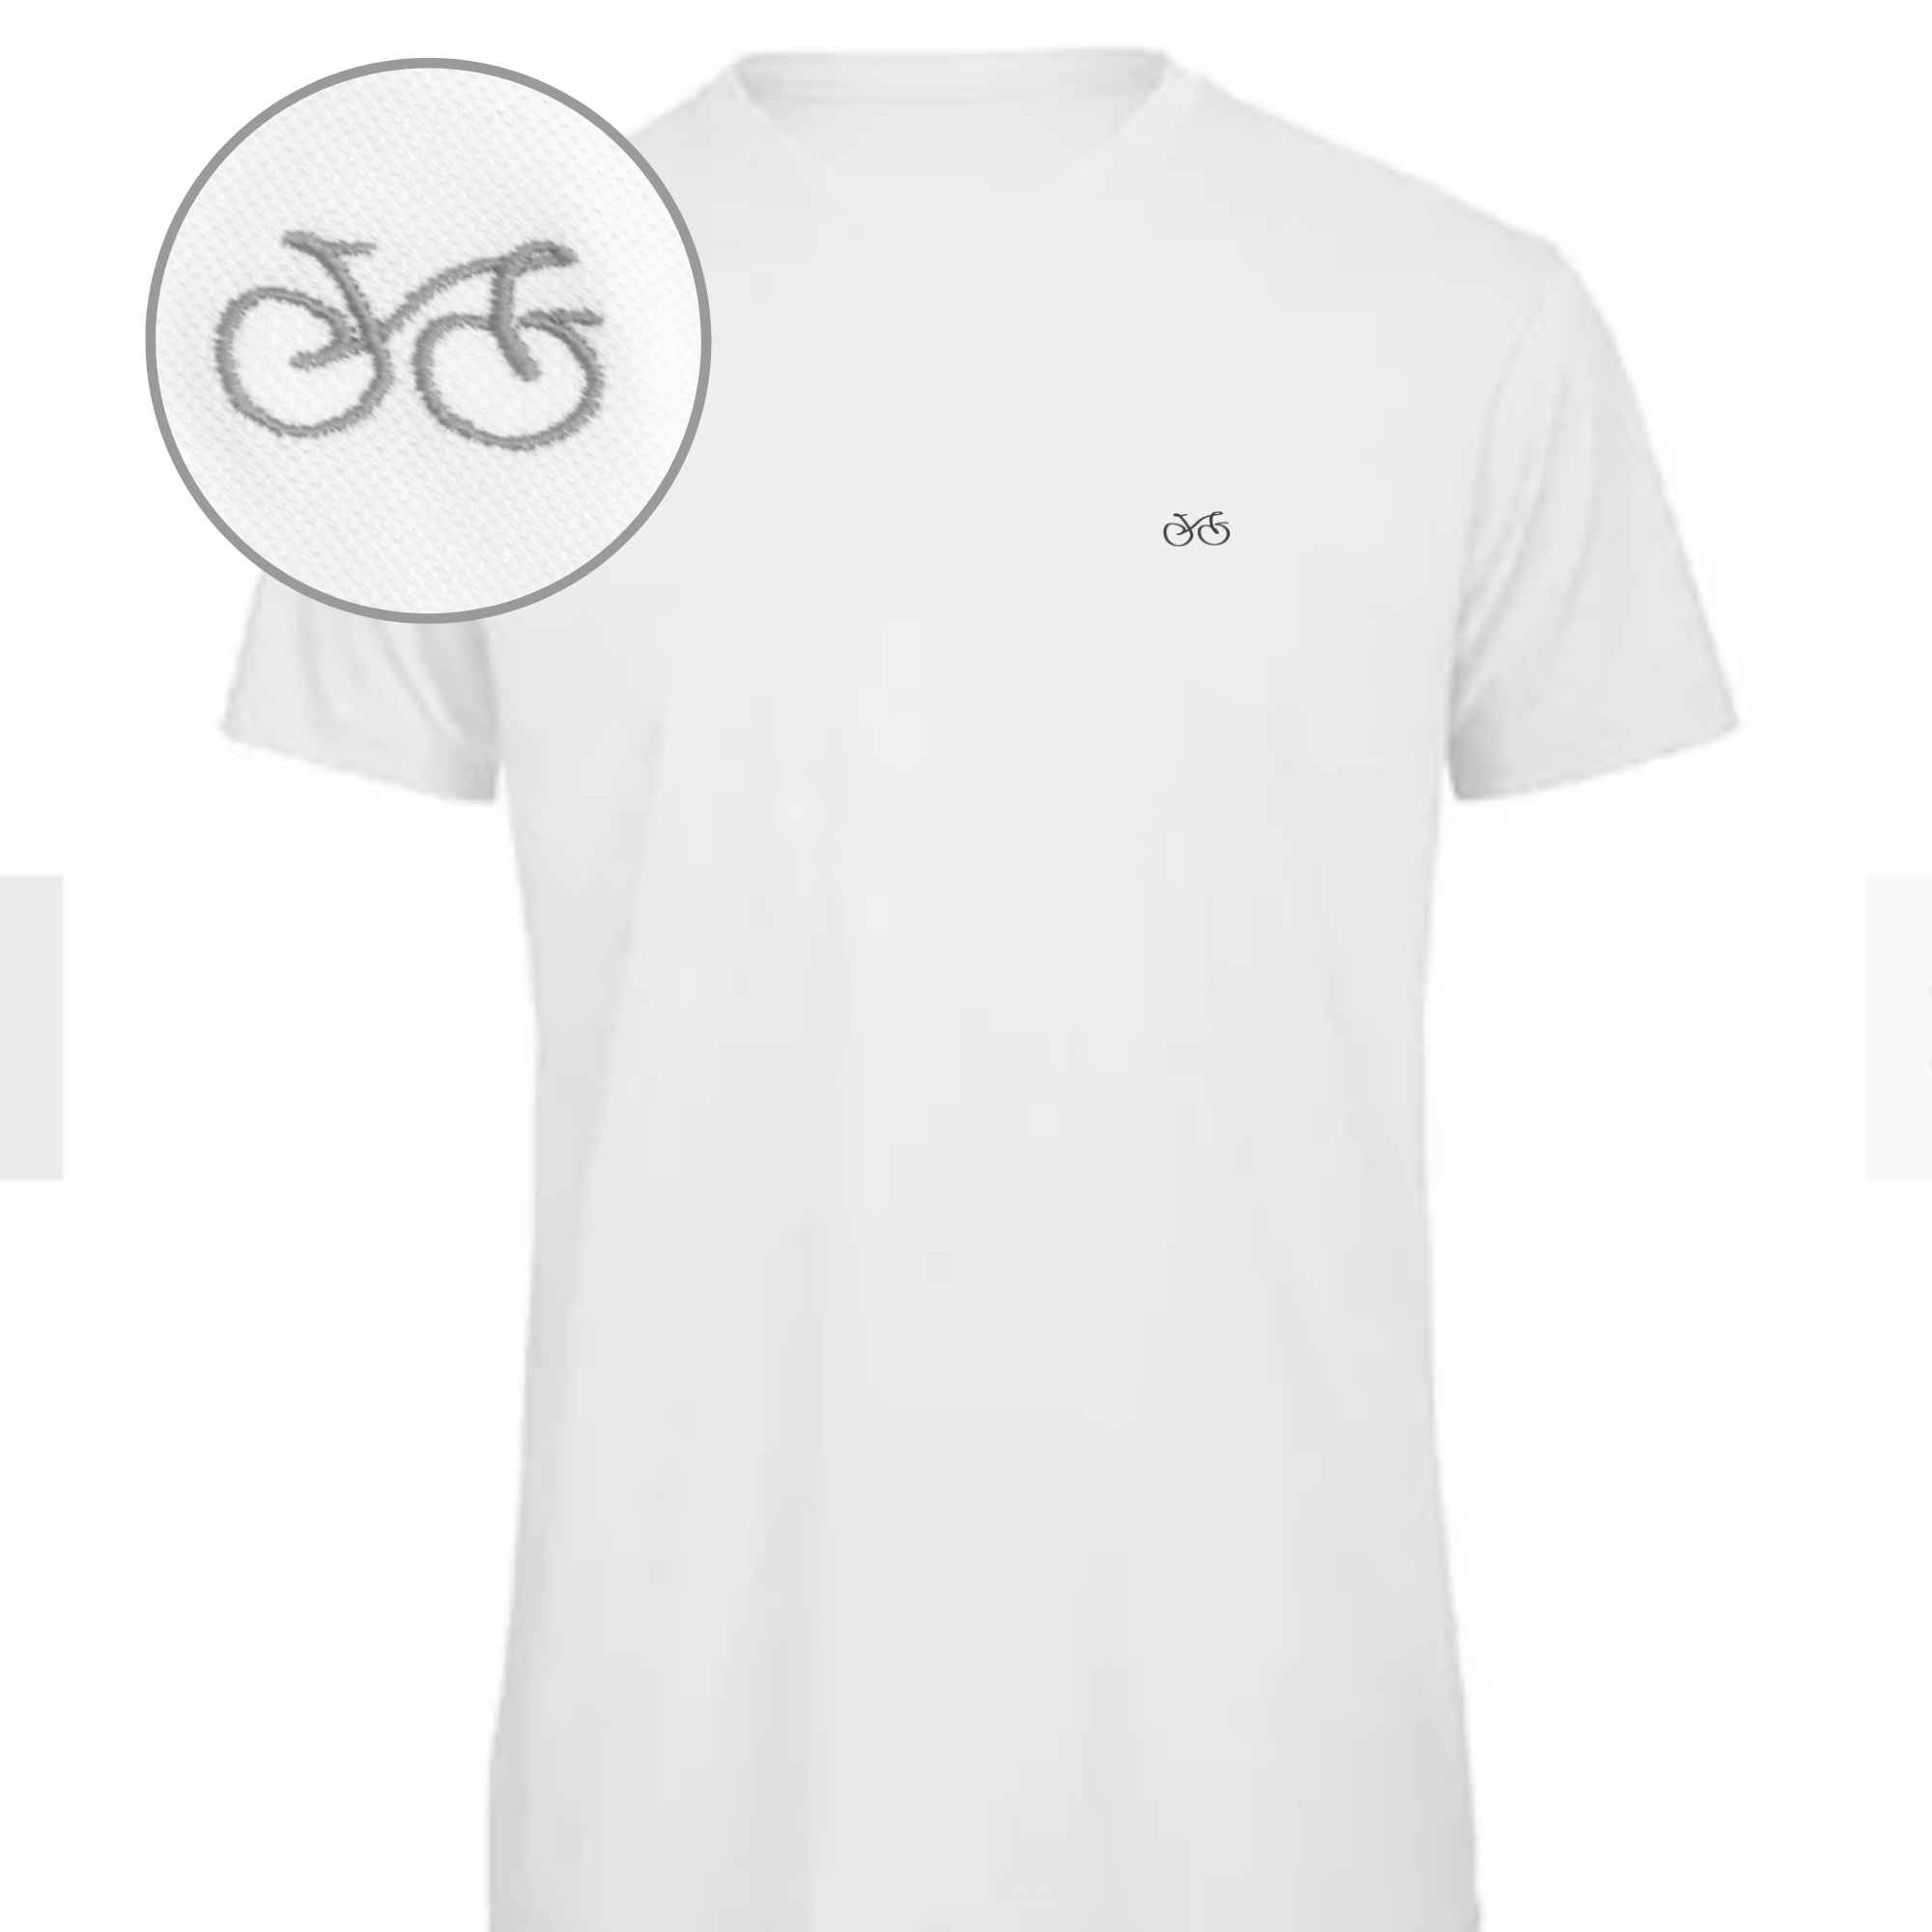 Sportliches T-Shirt mit einem Fahrrad bestickt mit einem dezenten sportlichen Look